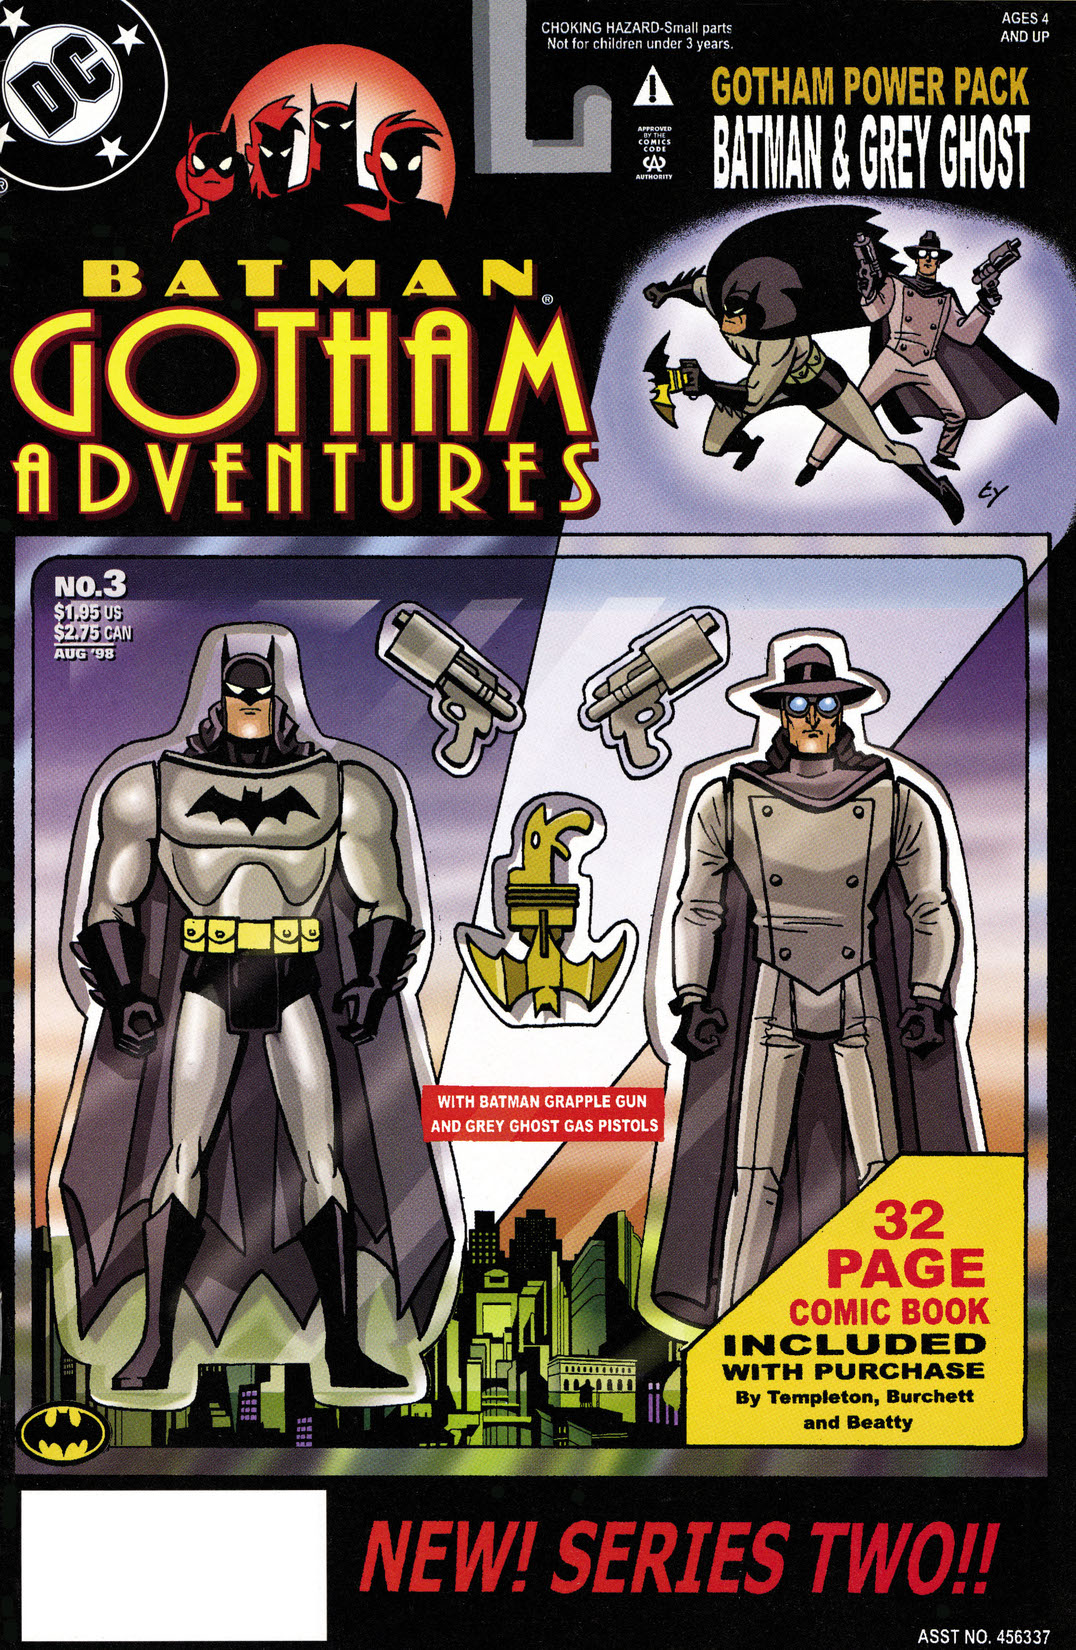 Batman: Gotham Adventures #3 preview images